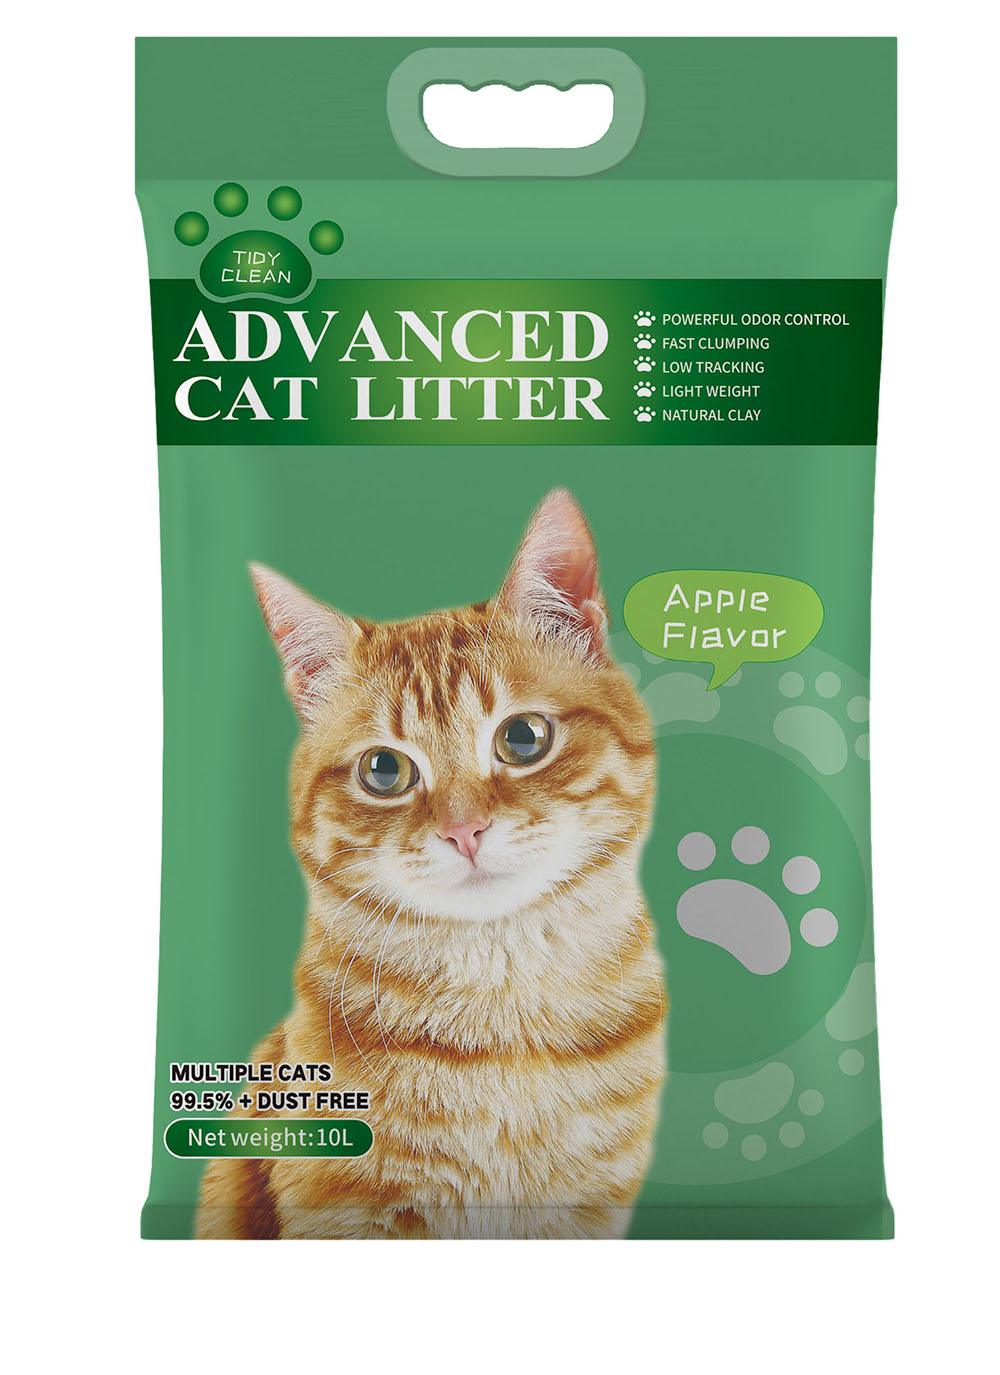 Buy Hey Kitty - Super Premium Ball Shape Bentonite Best Cat Litter